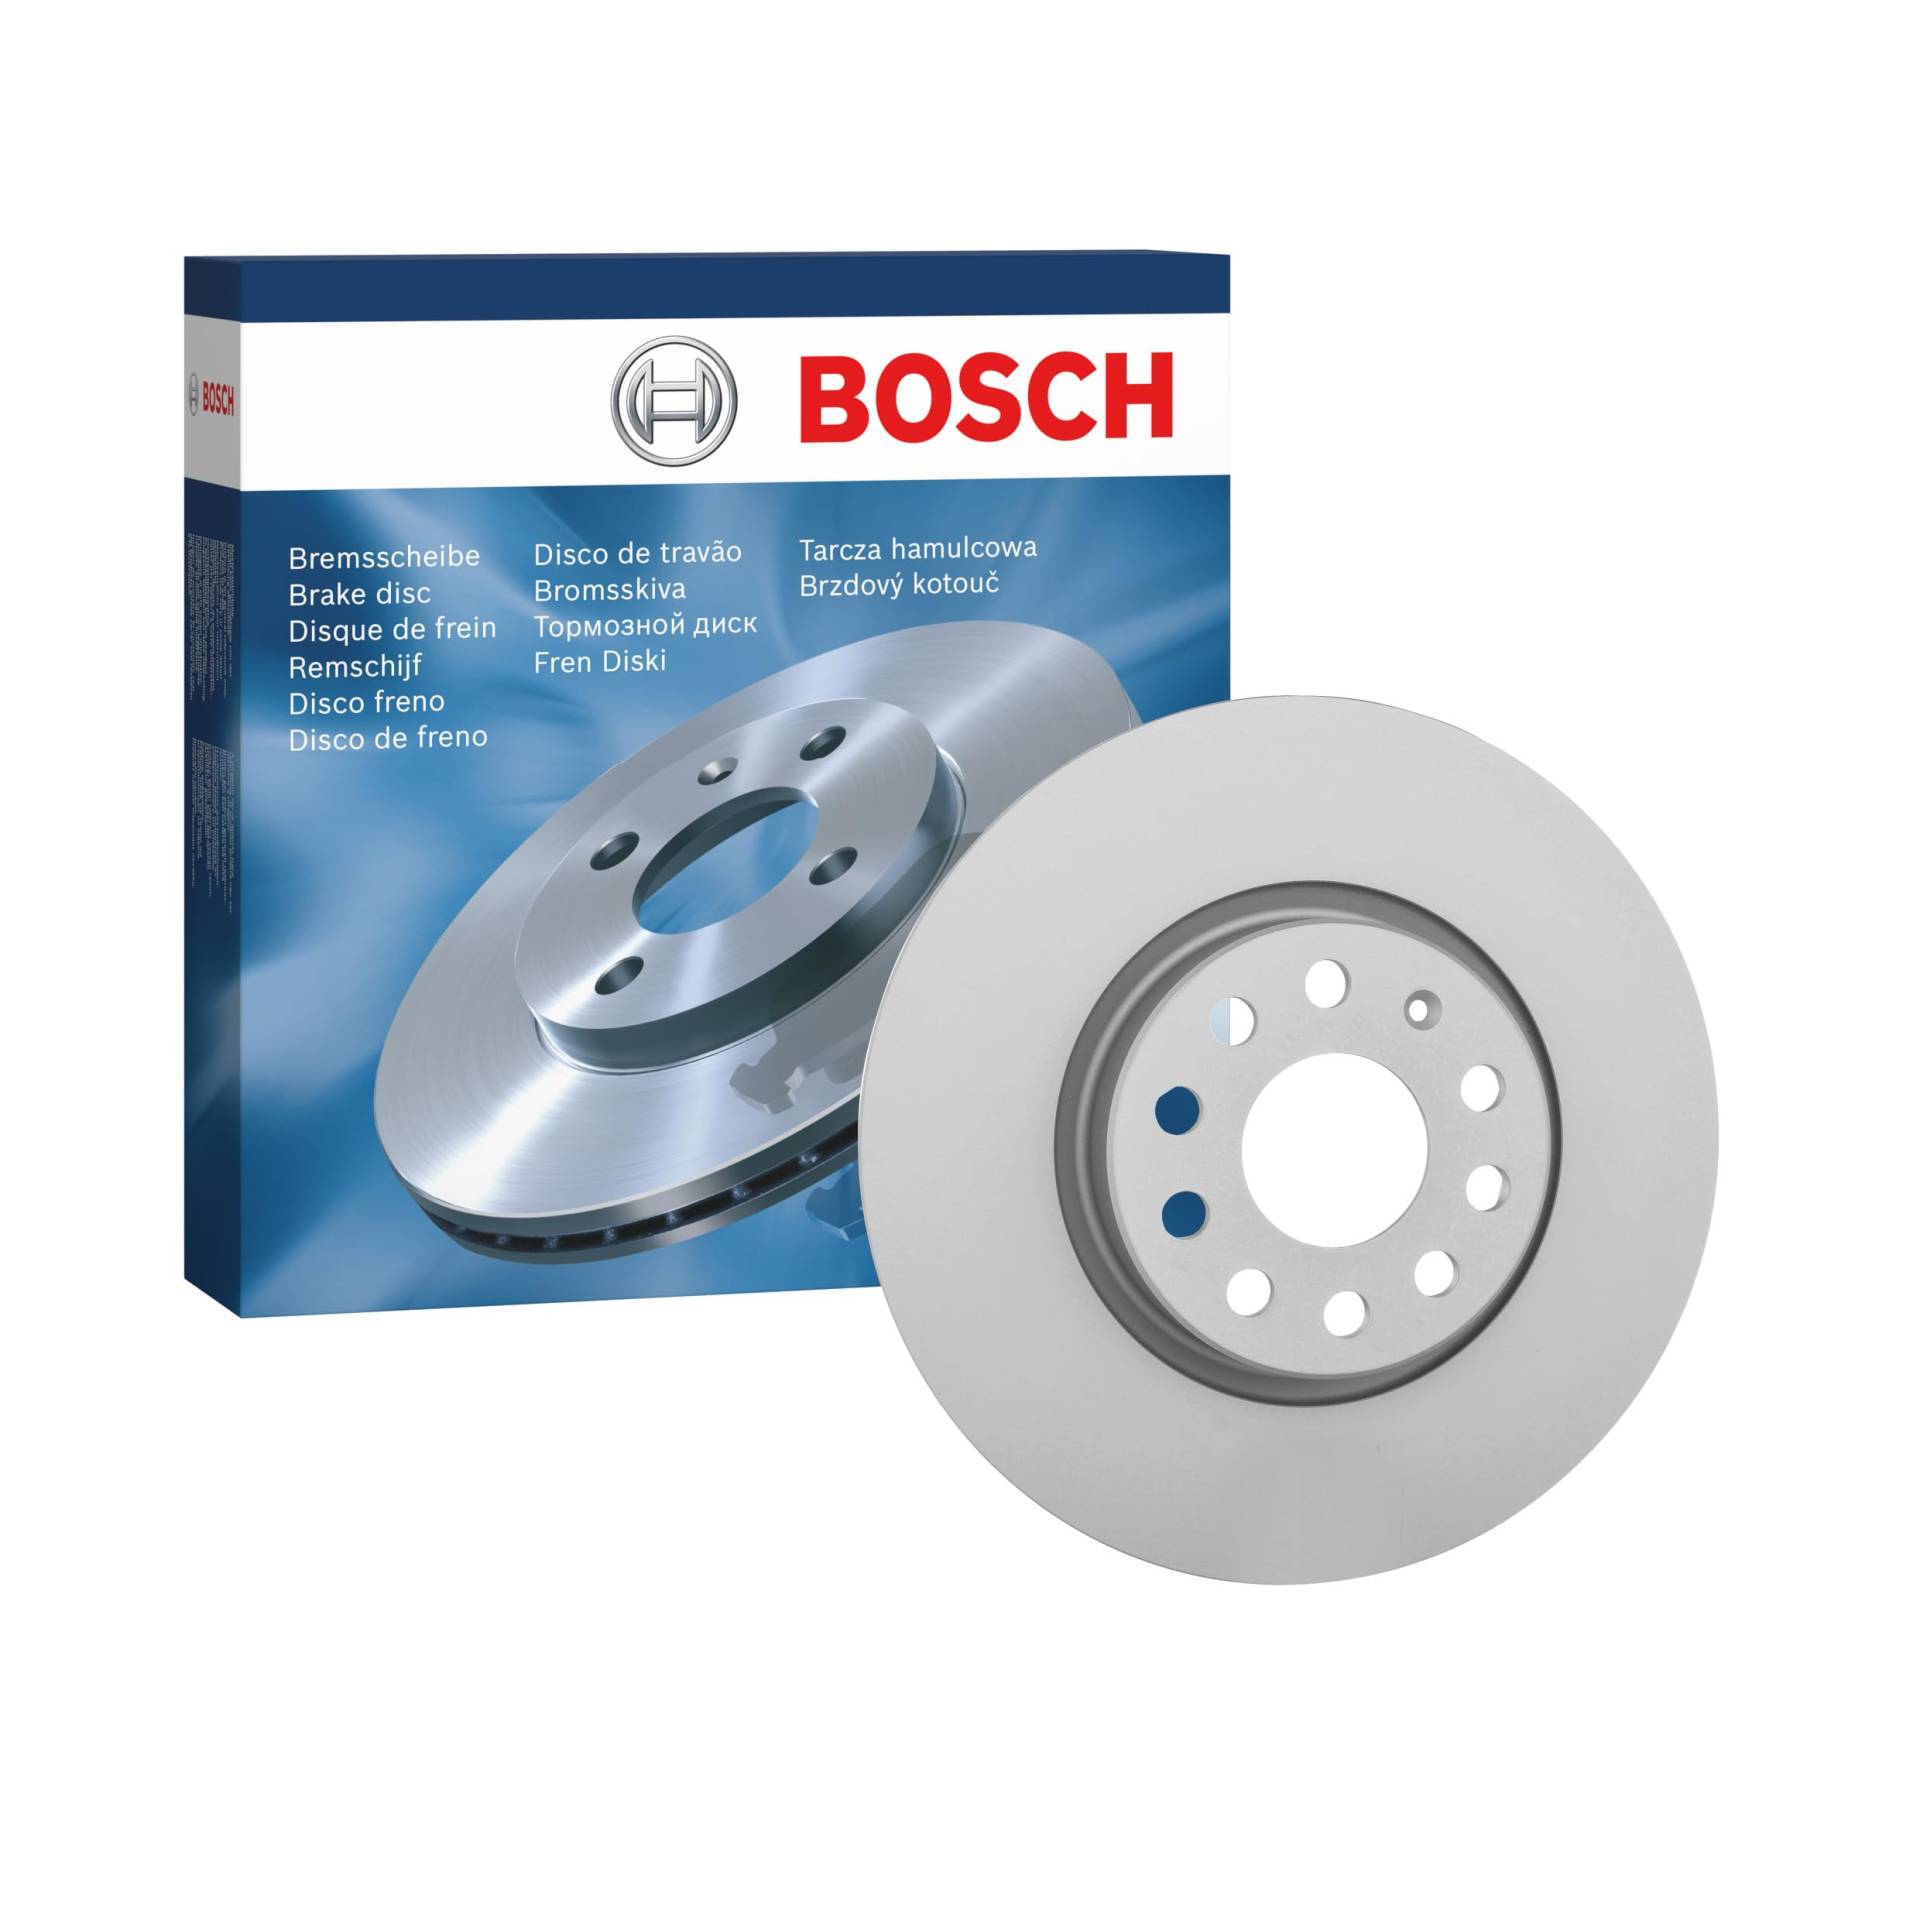 Bosch BD997 Bremsscheiben - Vorderachse - ECE-R90 Zertifizierung - eine Bremsscheibe von Bosch Automotive